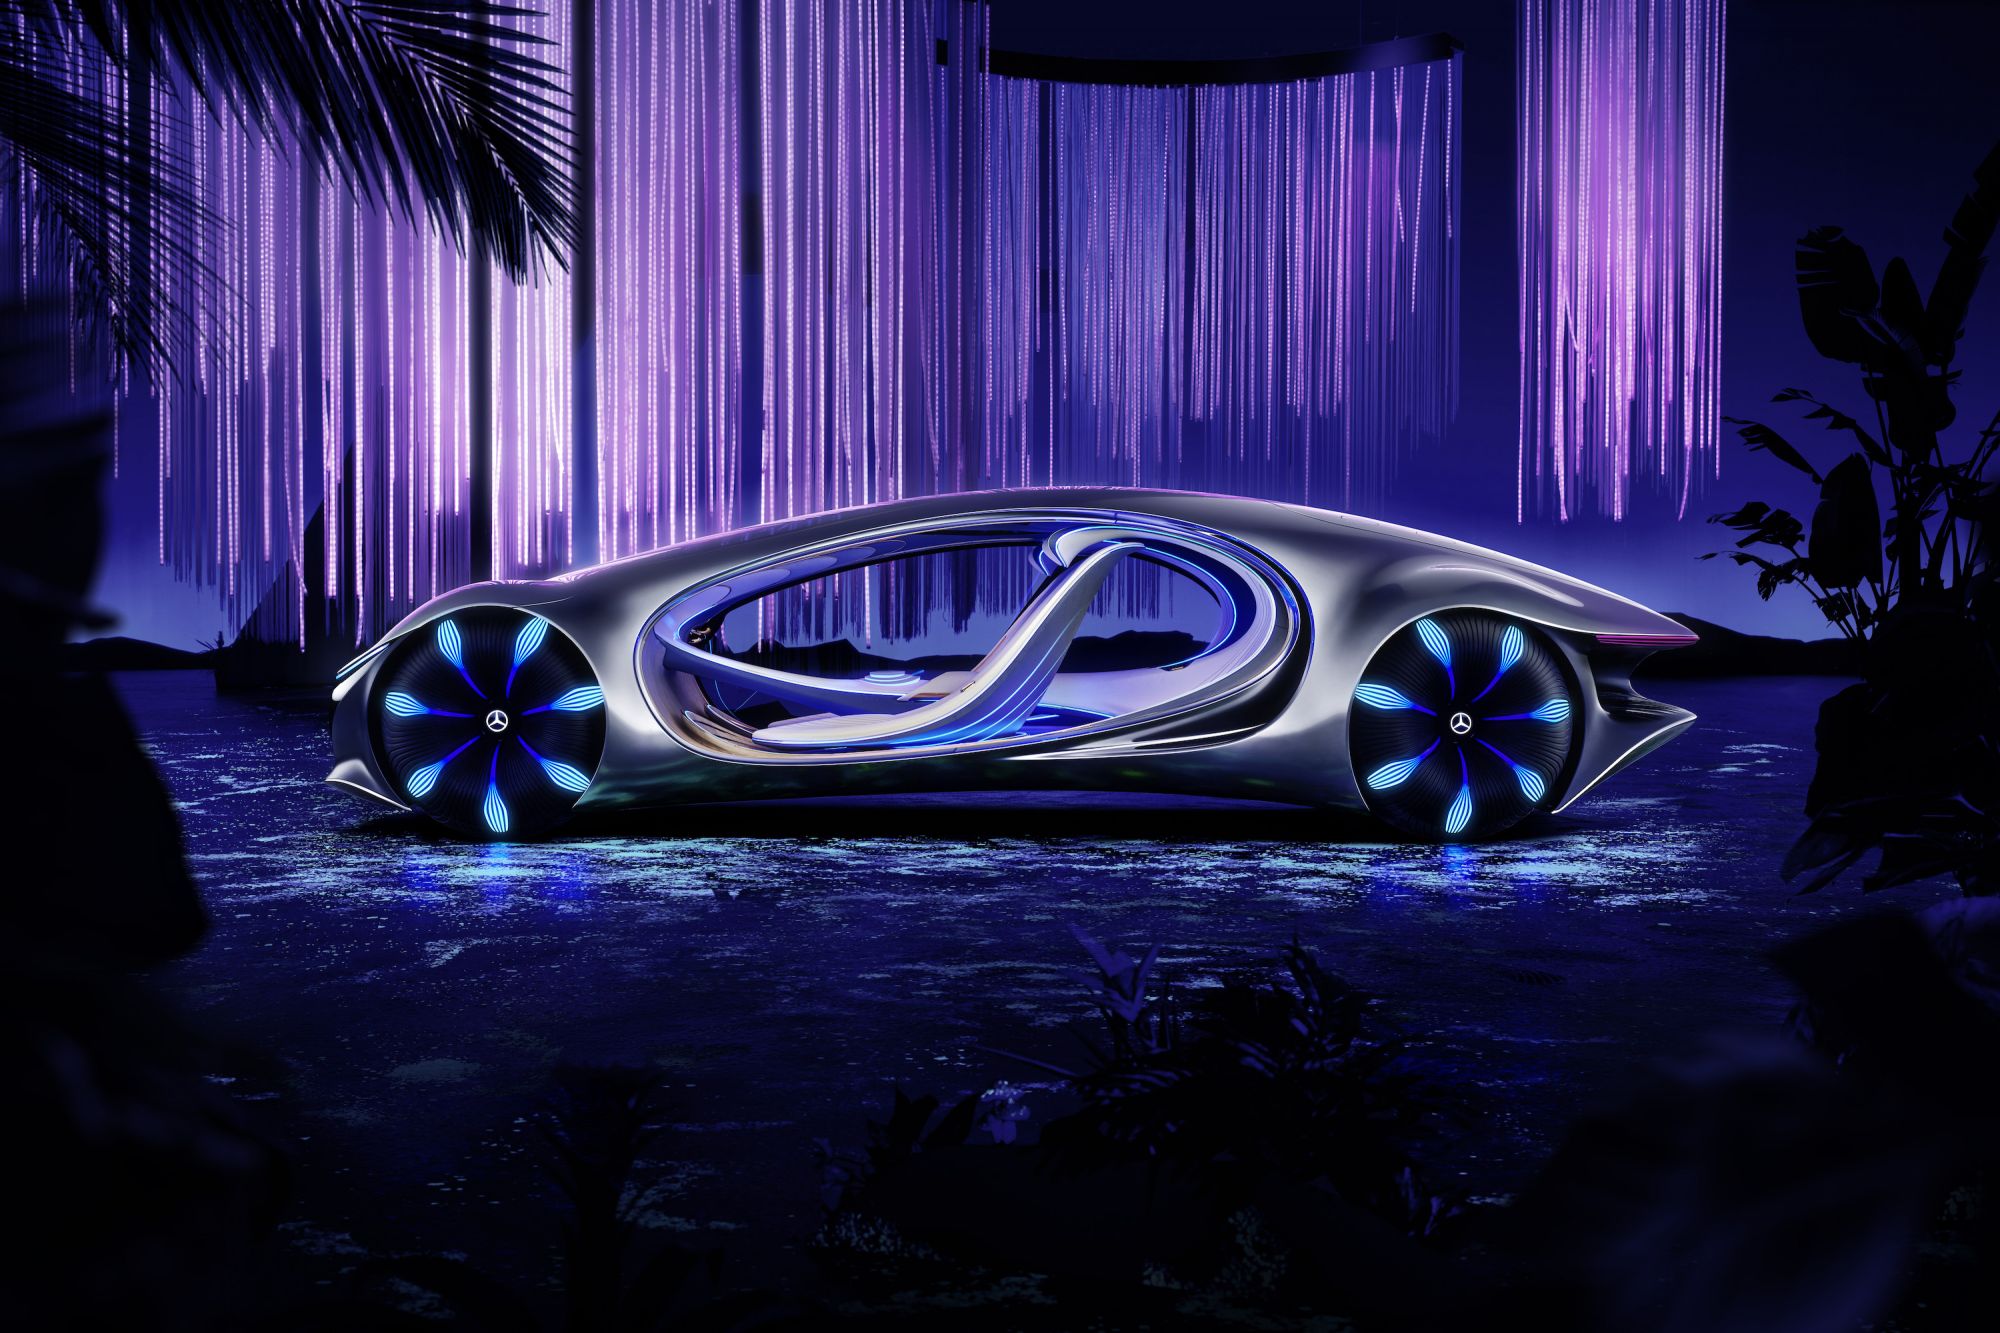 Tại năm 2024, xe hơi Avatar đã trở thành một biểu tượng về sự tiên tiến và thông minh của công nghệ. Với các tính năng hấp dẫn như khả năng tự lái, kết nối thông minh, và thiết kế hiện đại đầy cuốn hút, xe hơi Avatar đang thu hút sự chú ý của rất nhiều người. Hãy xem ảnh liên quan để trải nghiệm sự thú vị của xe hơi này.